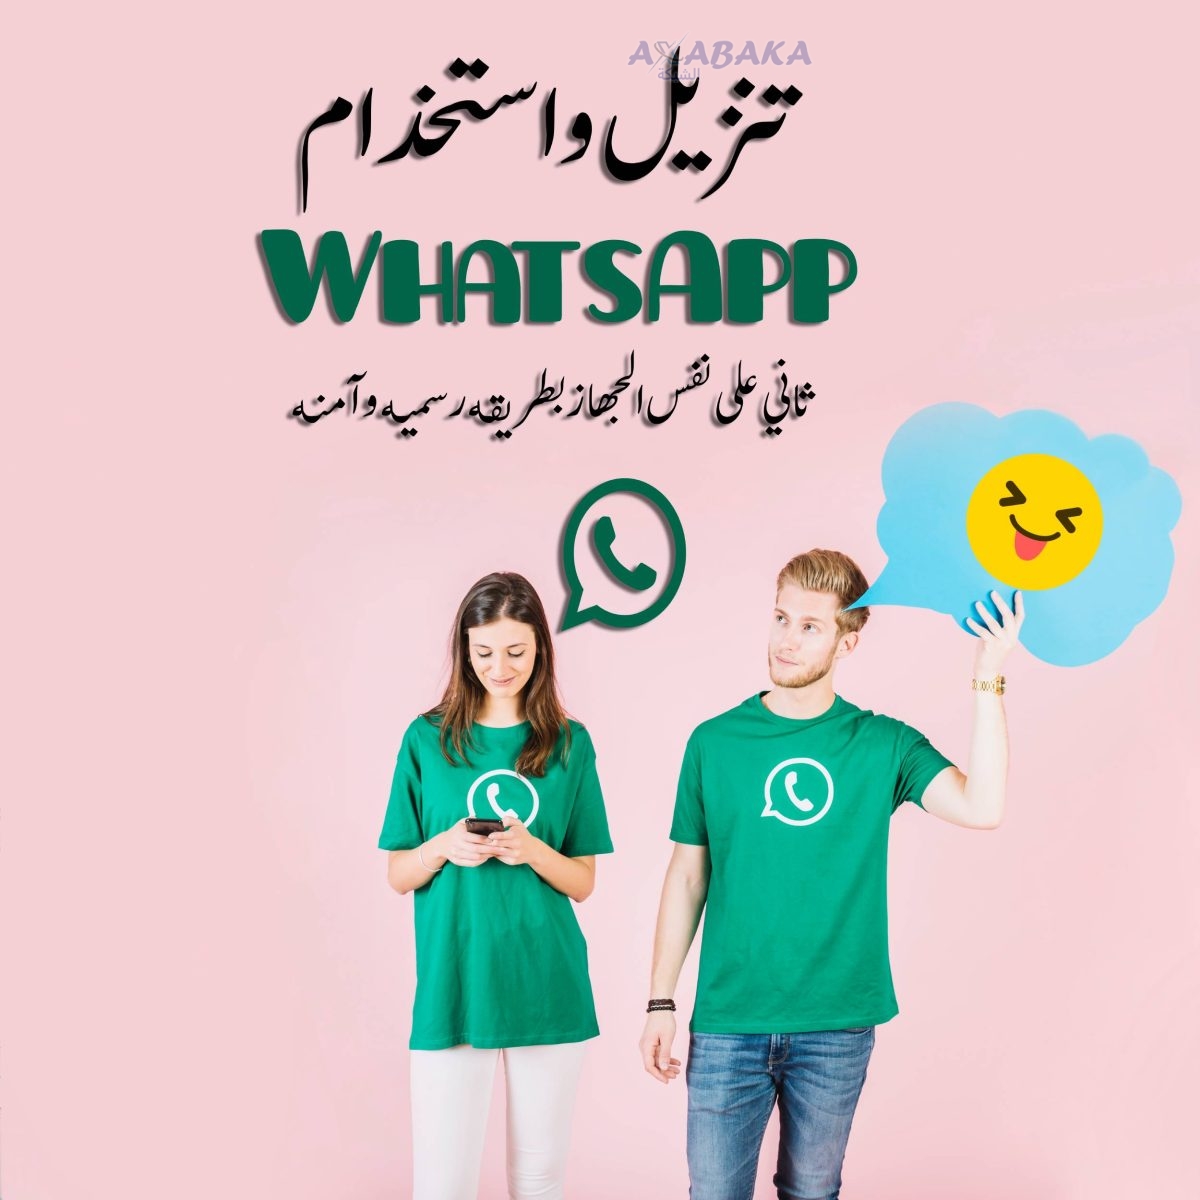 تنزيل واستخدام WhatsApp ثاني على نفس الجهاز